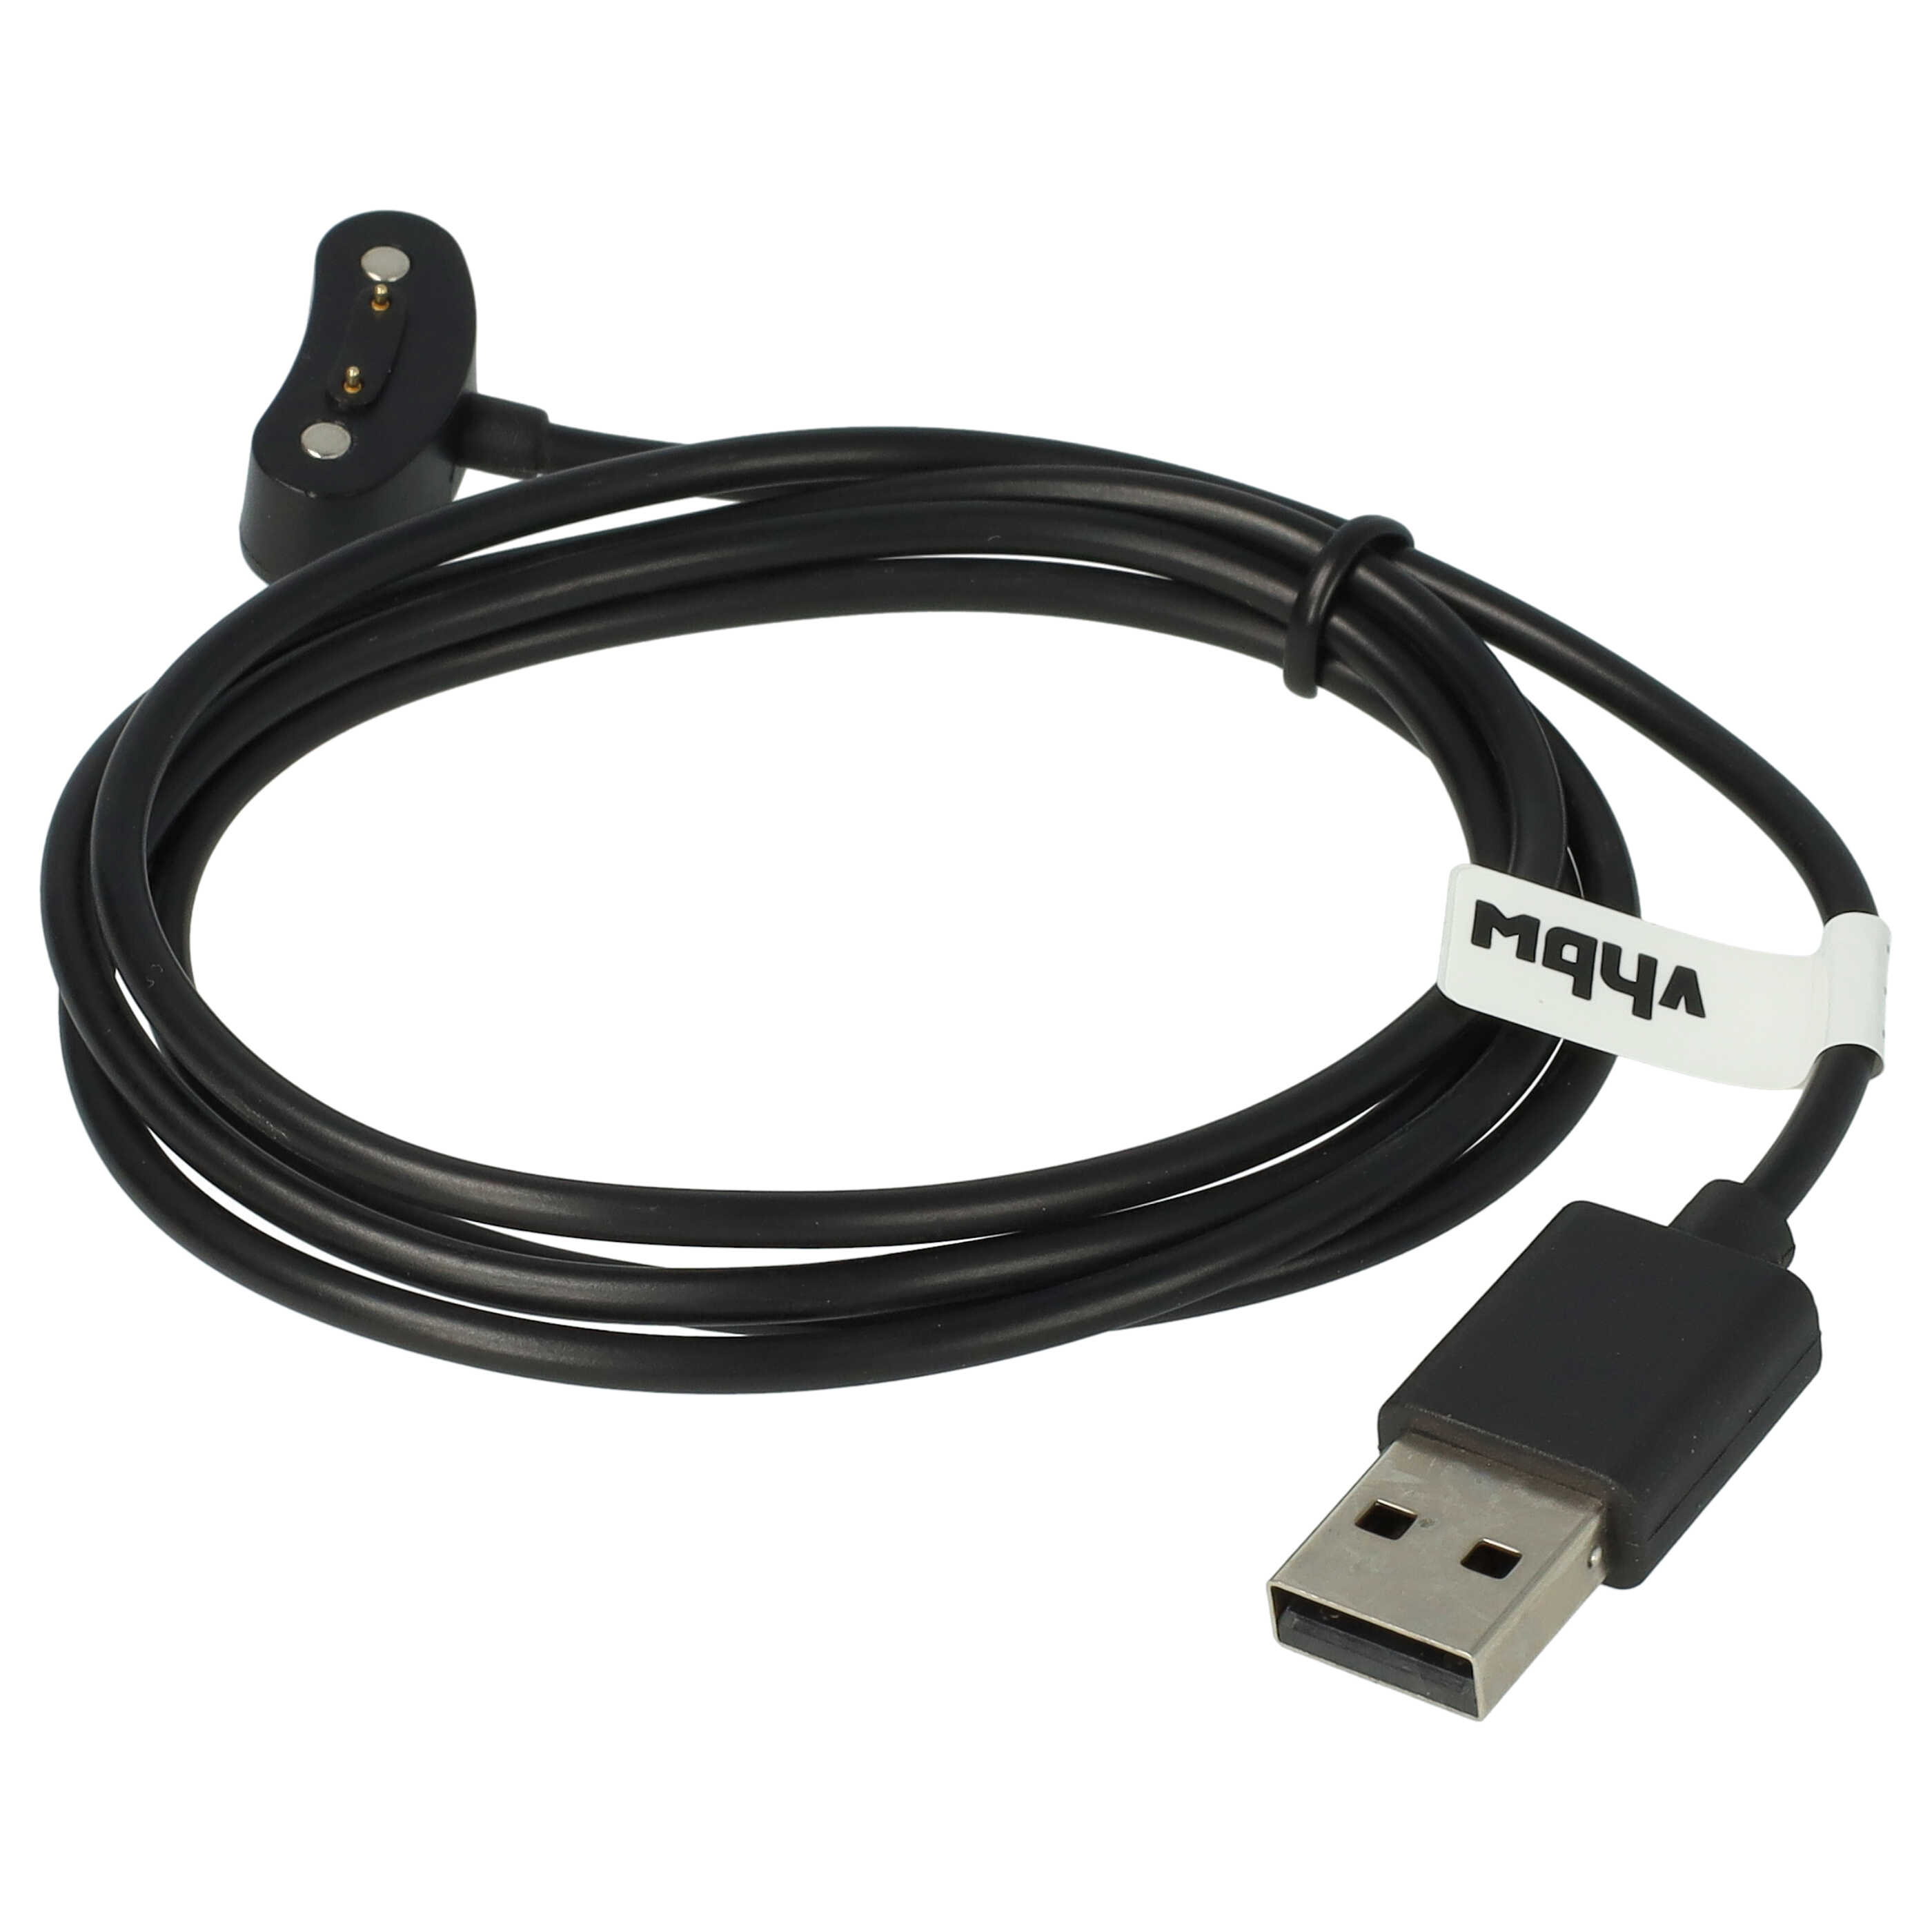 Kabel do ładowania smartwatch Mobvoi TicWatch E3 - Kabel USB A, 100 cm, czarny